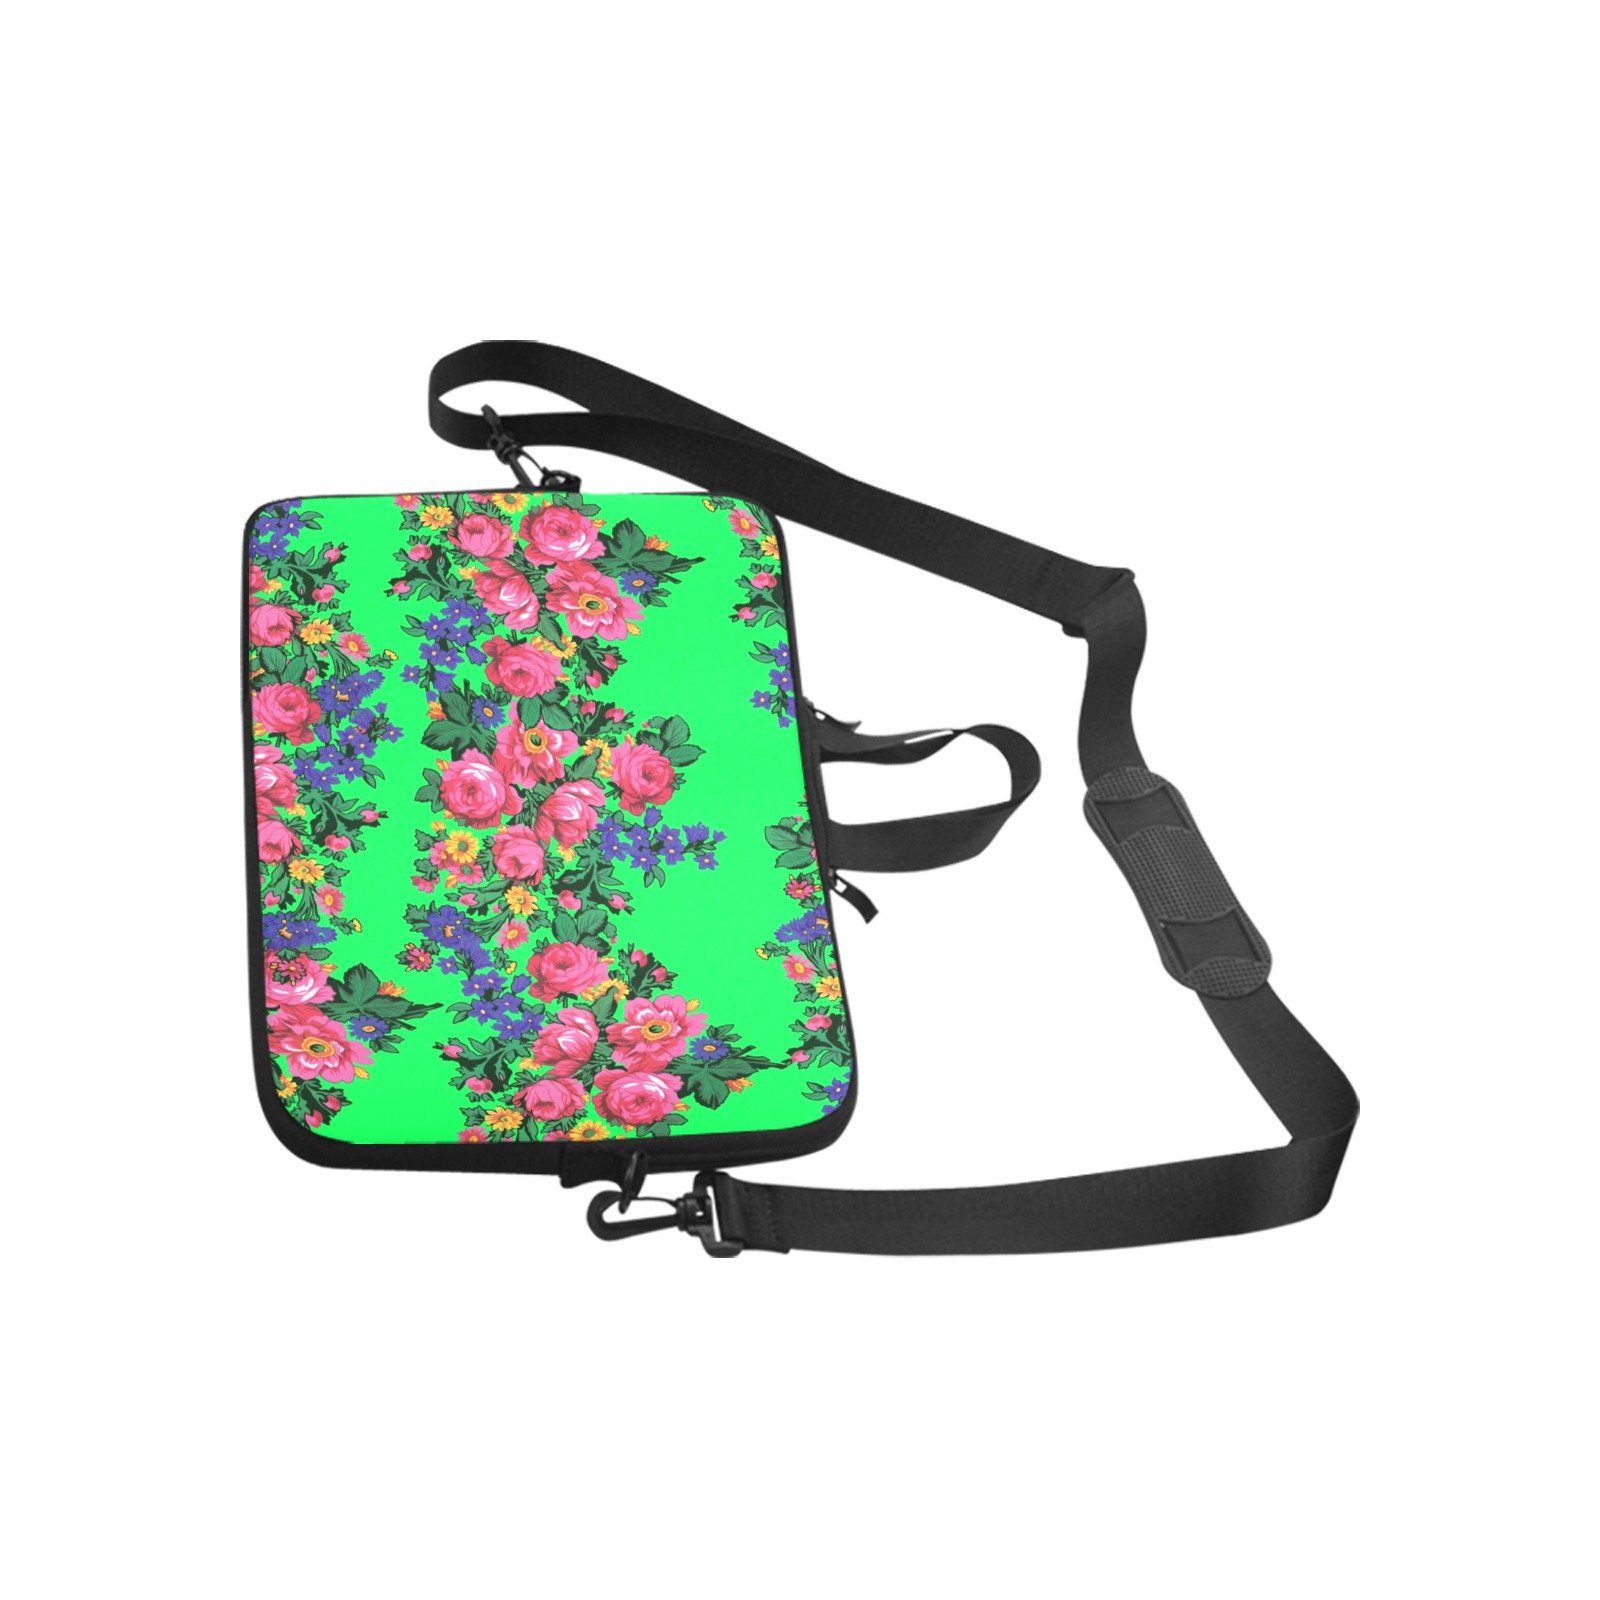 Kokum's Revenge Green Laptop Handbags 11" bag e-joyer 